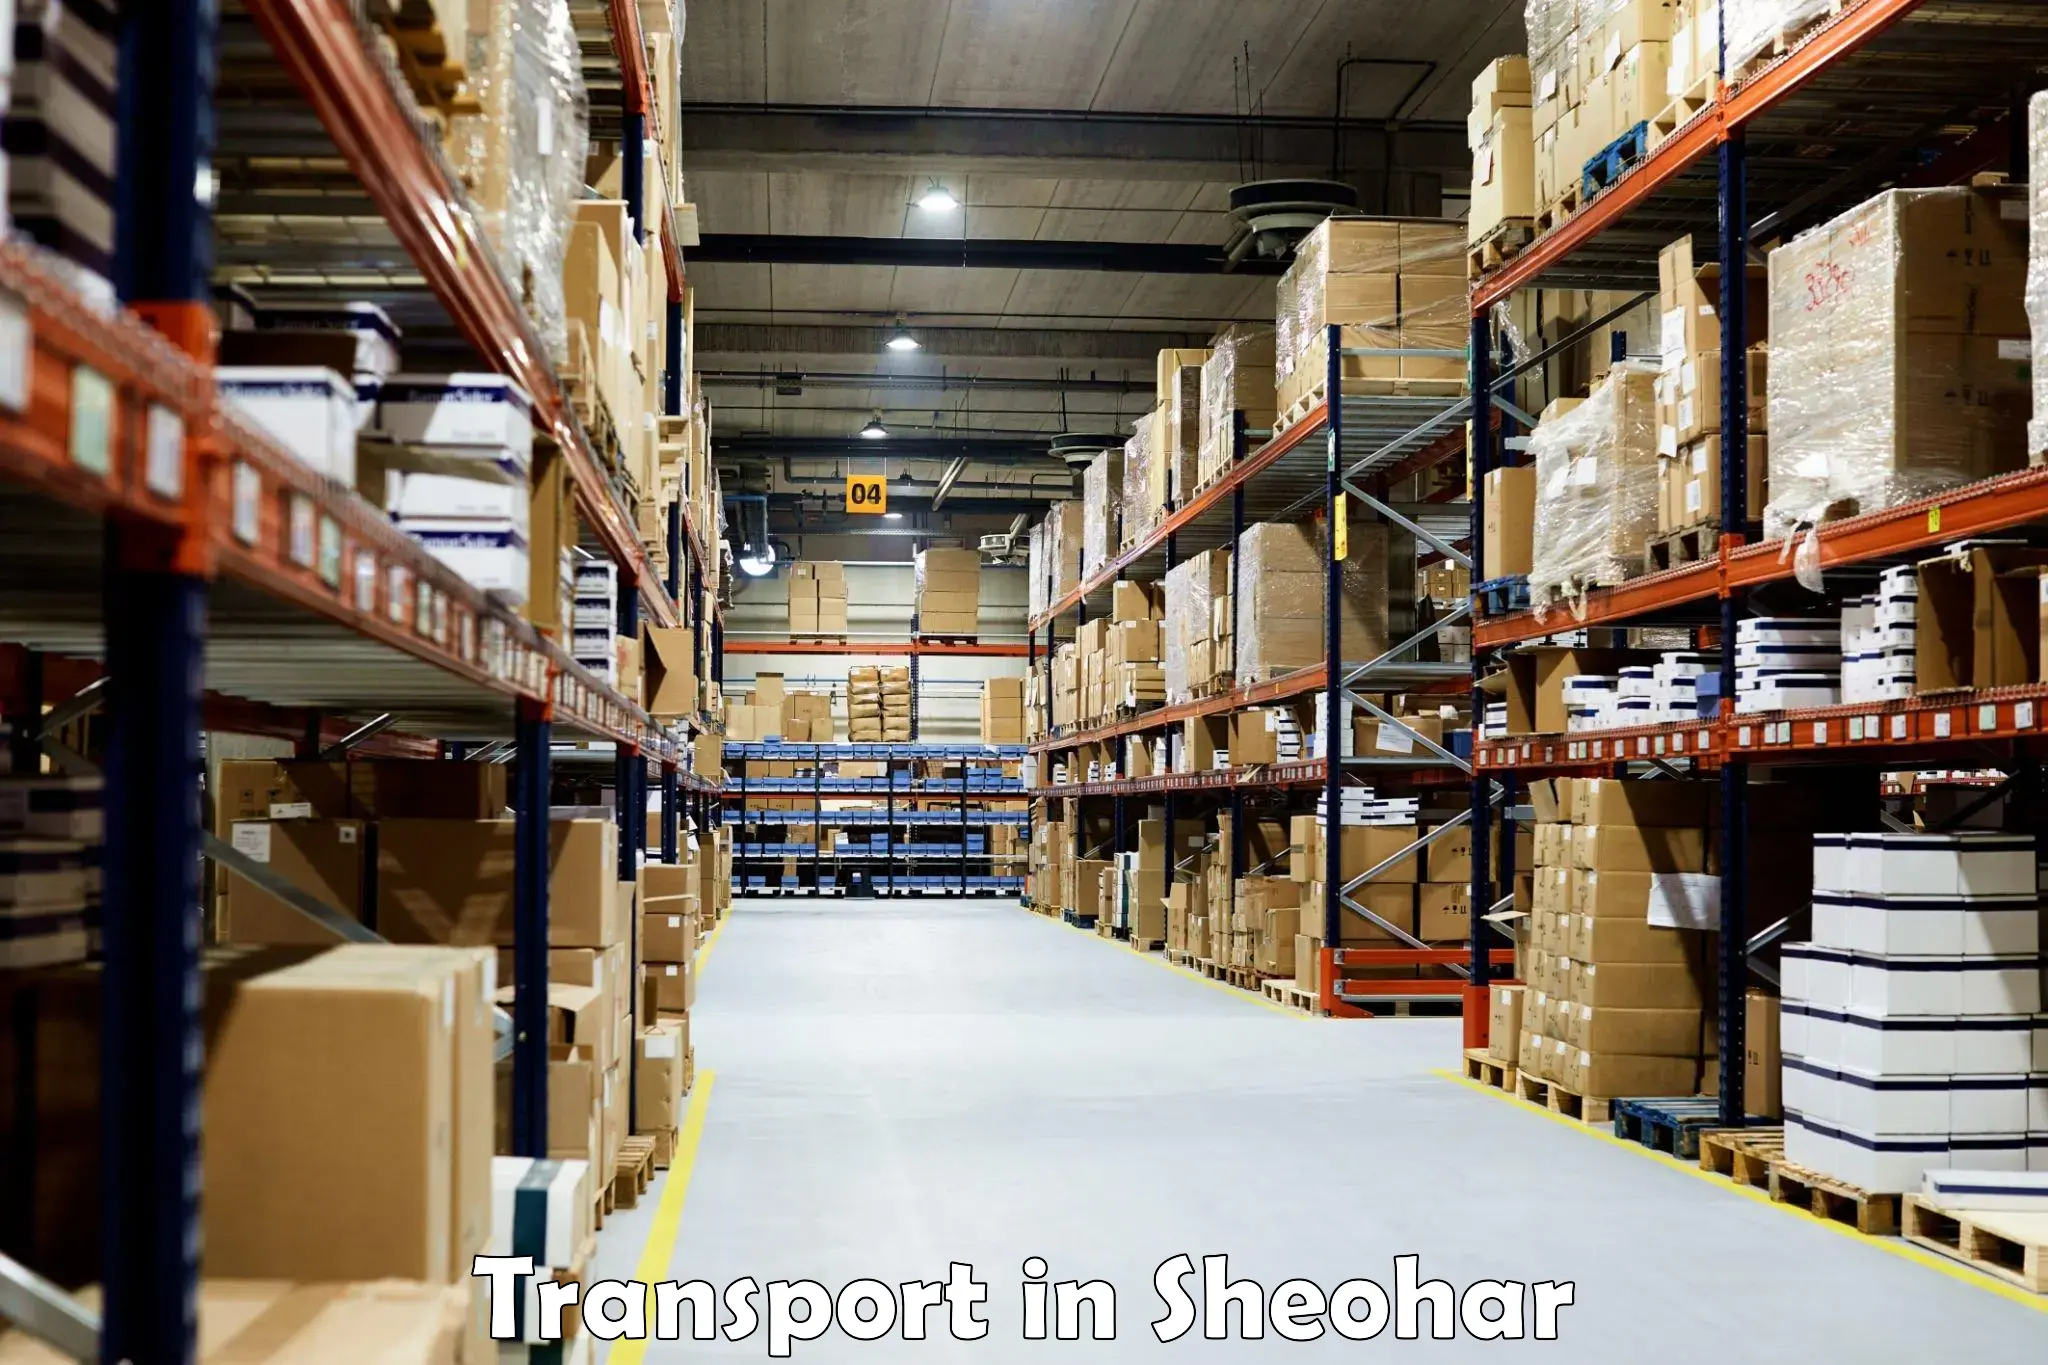 Furniture transport service in Sheohar